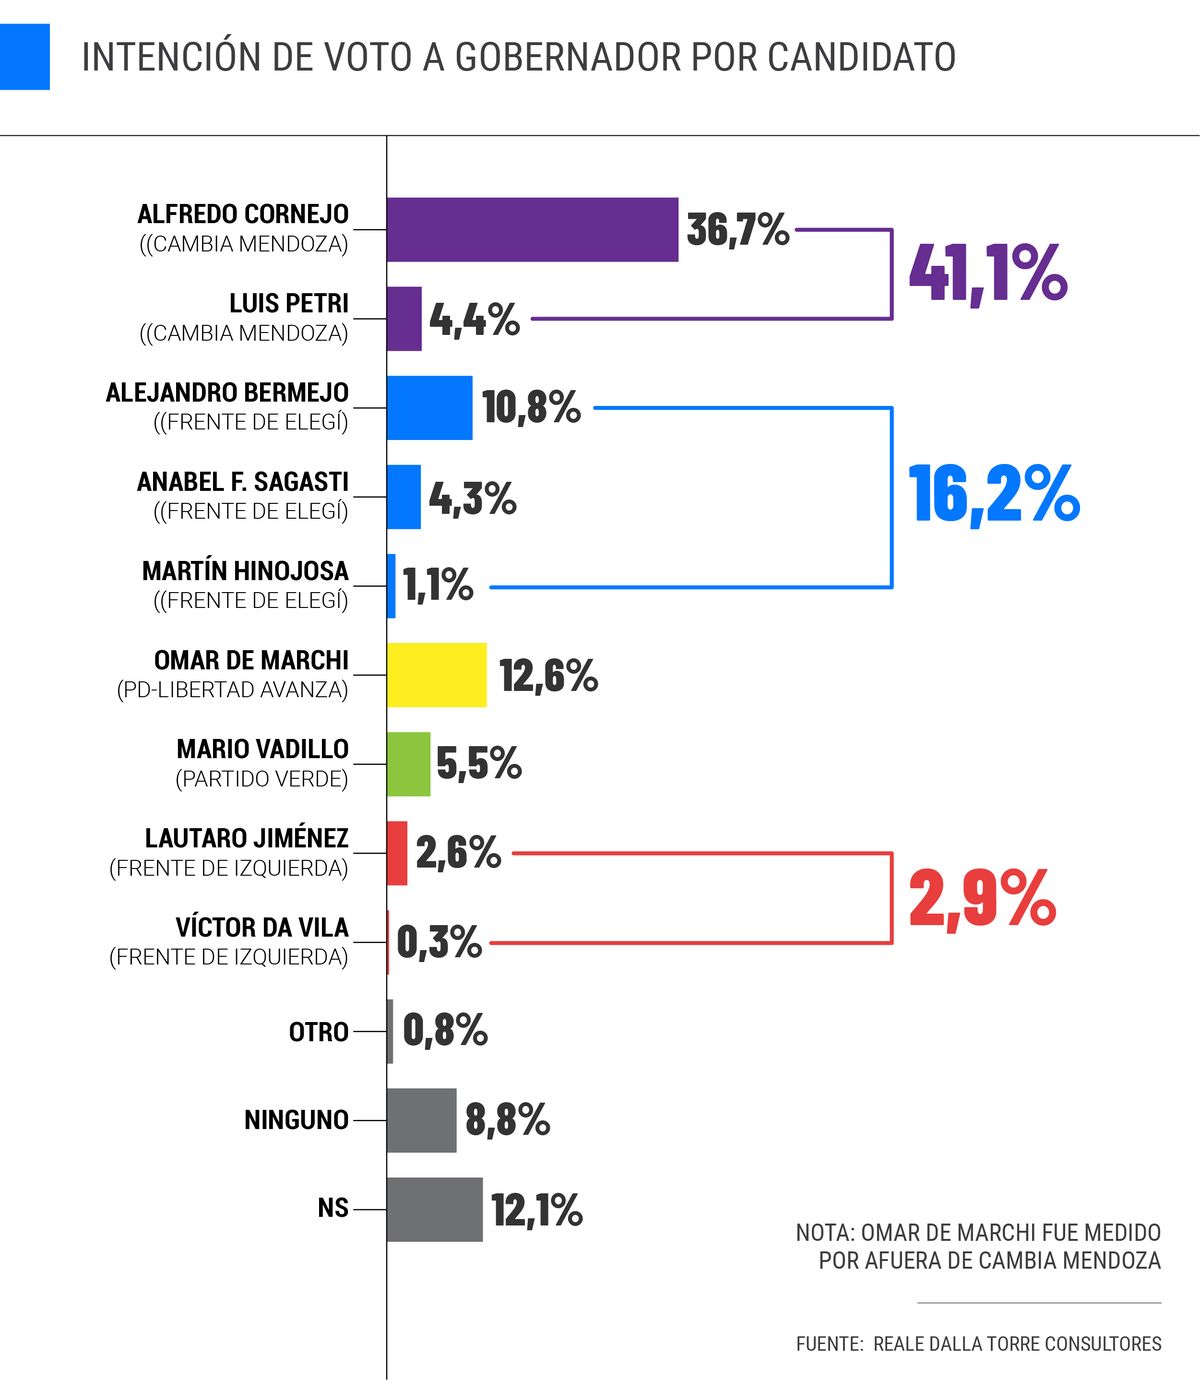 La intención de voto a gobernador en Mendoza, por candidato, según la encuestadora Reale Dalla Torre.